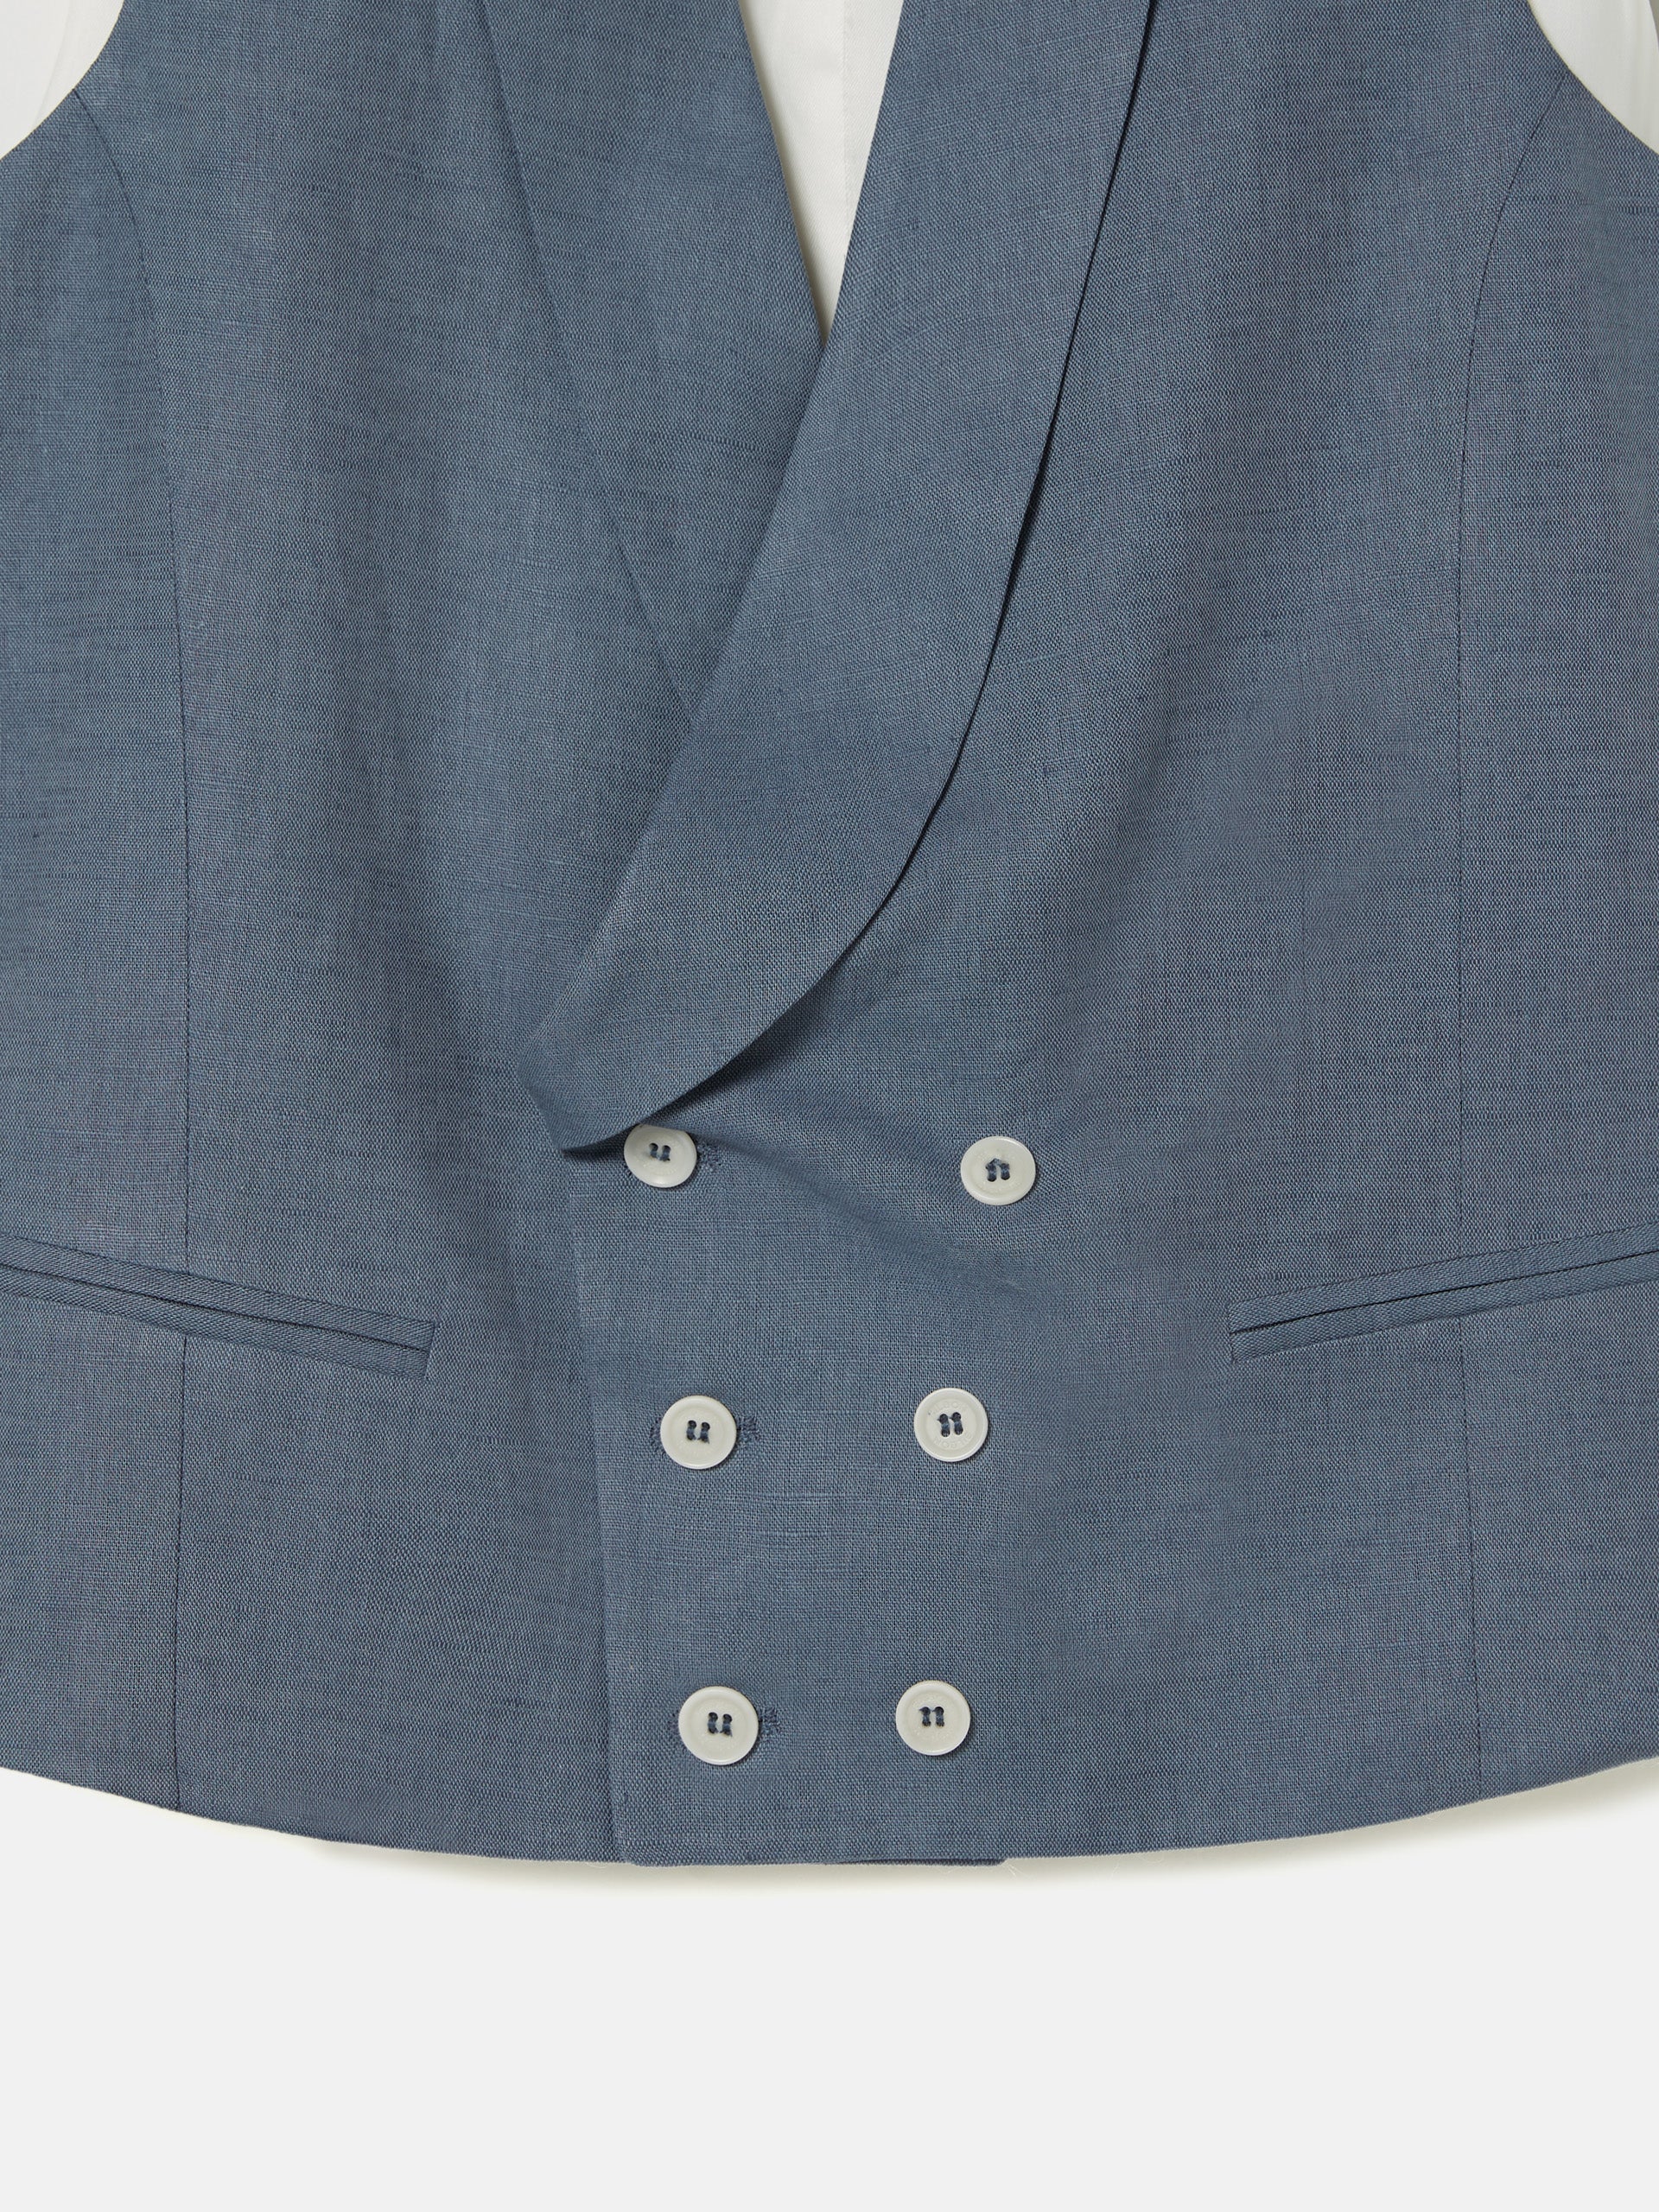 Slate blue round neck waistcoat